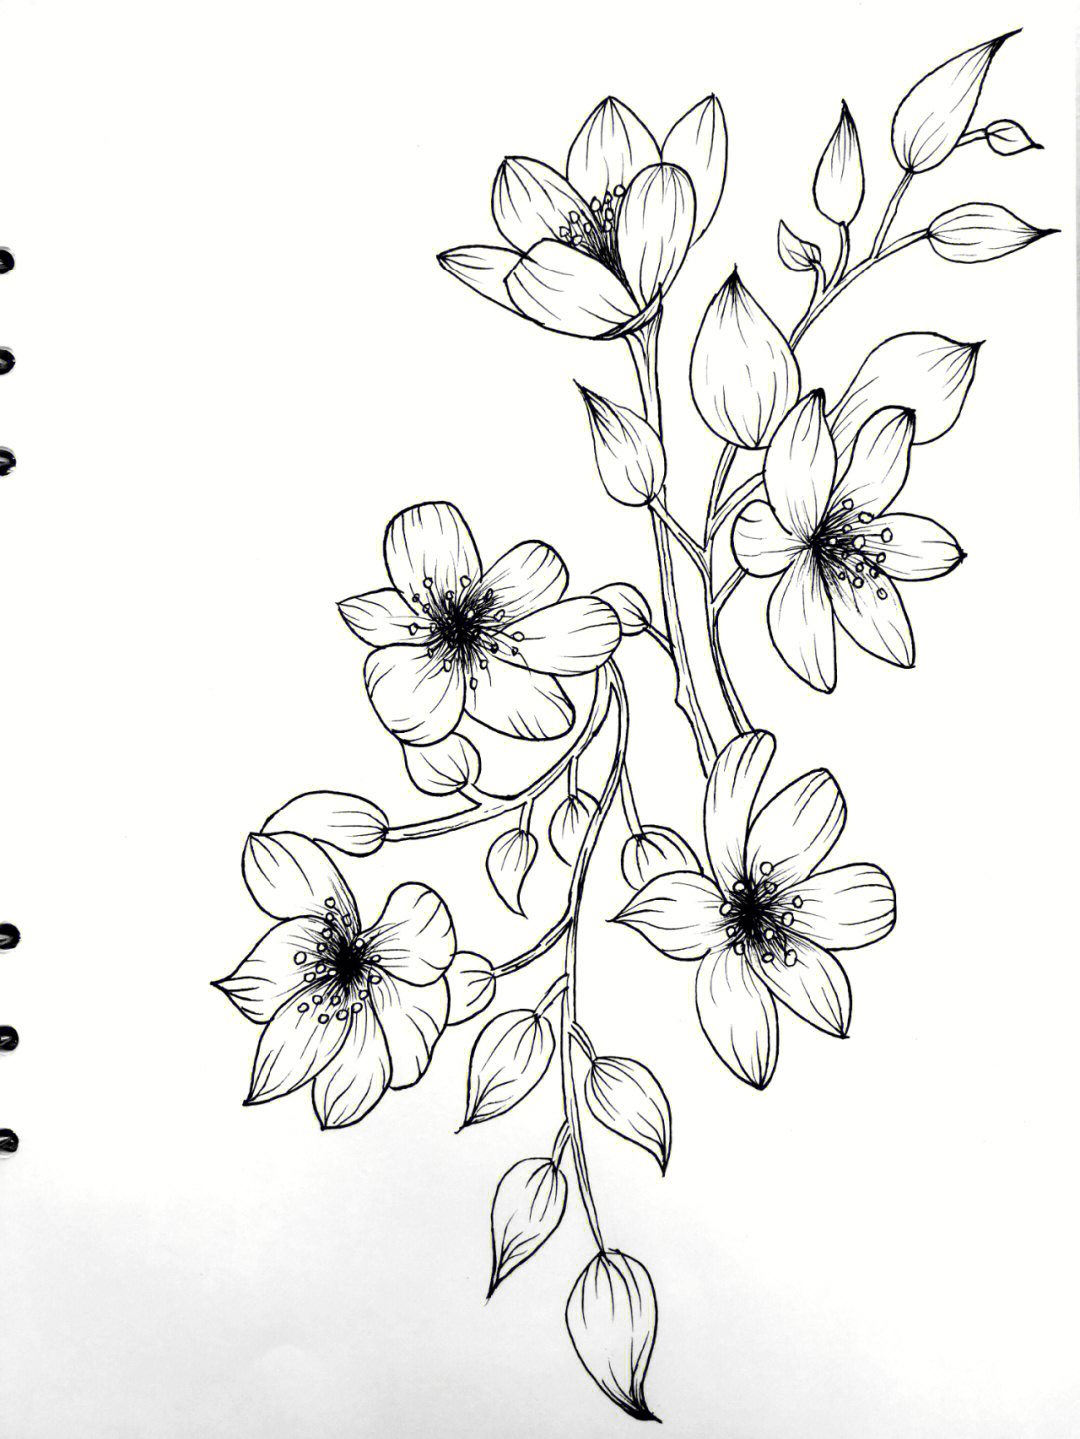 100张花卉线描图写生图片